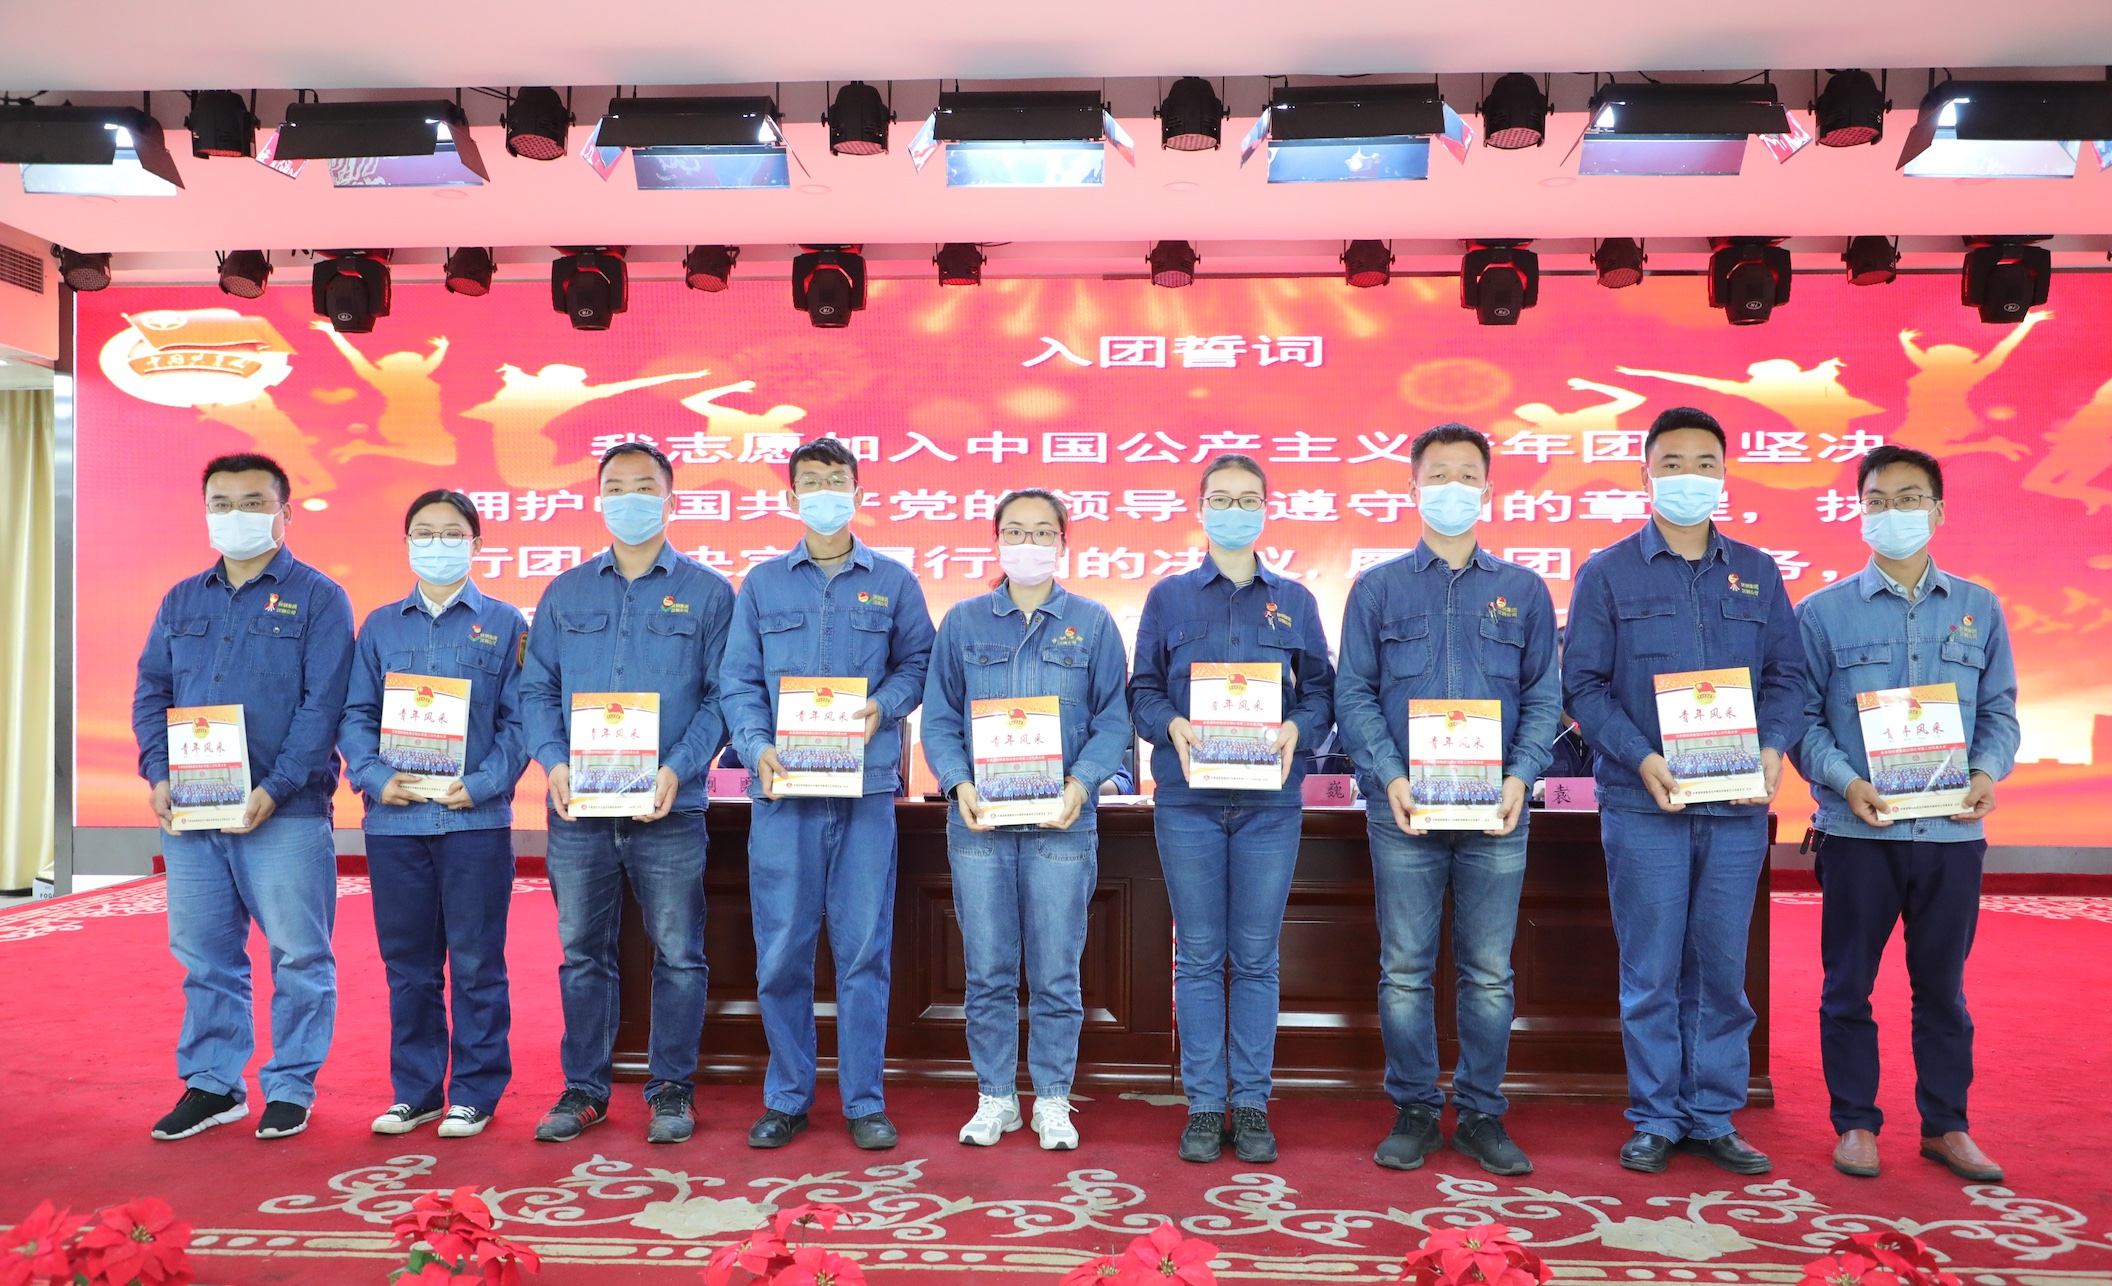 “离团不离心 青春再出发”——汉钢公司团委举办2020年超龄团员离团仪式